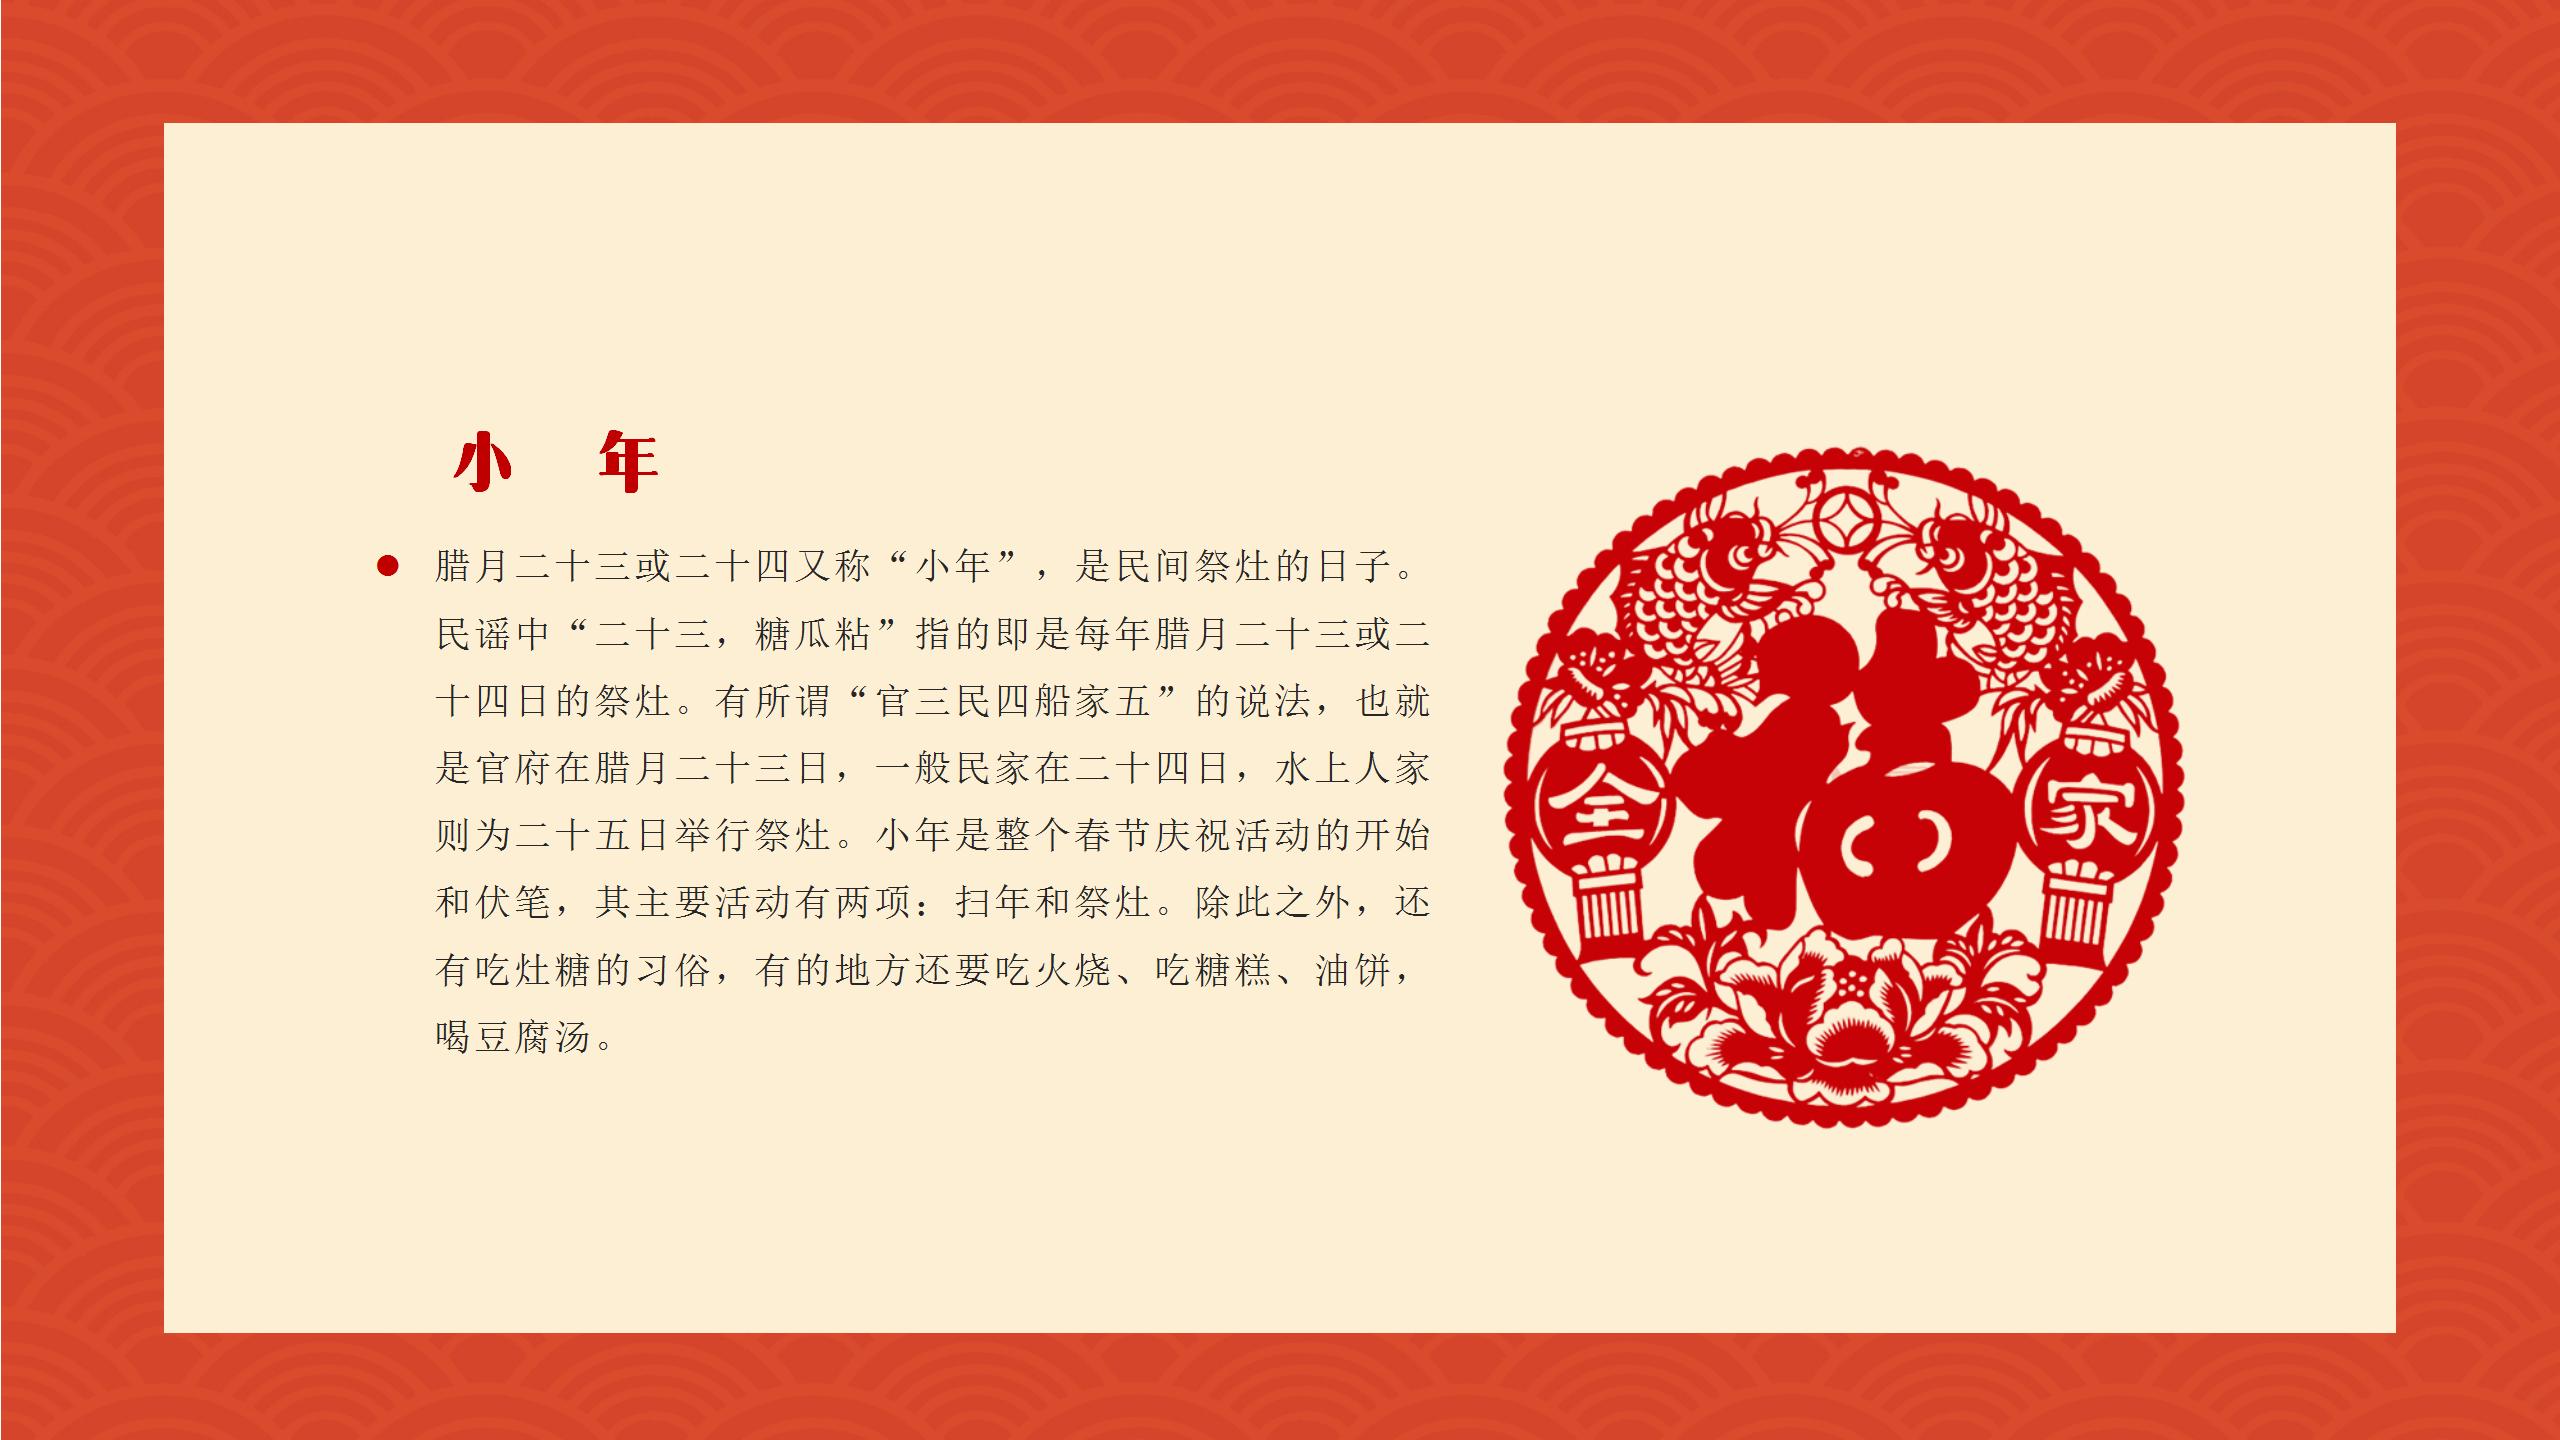 中国风喜庆春节宣传PPT模板